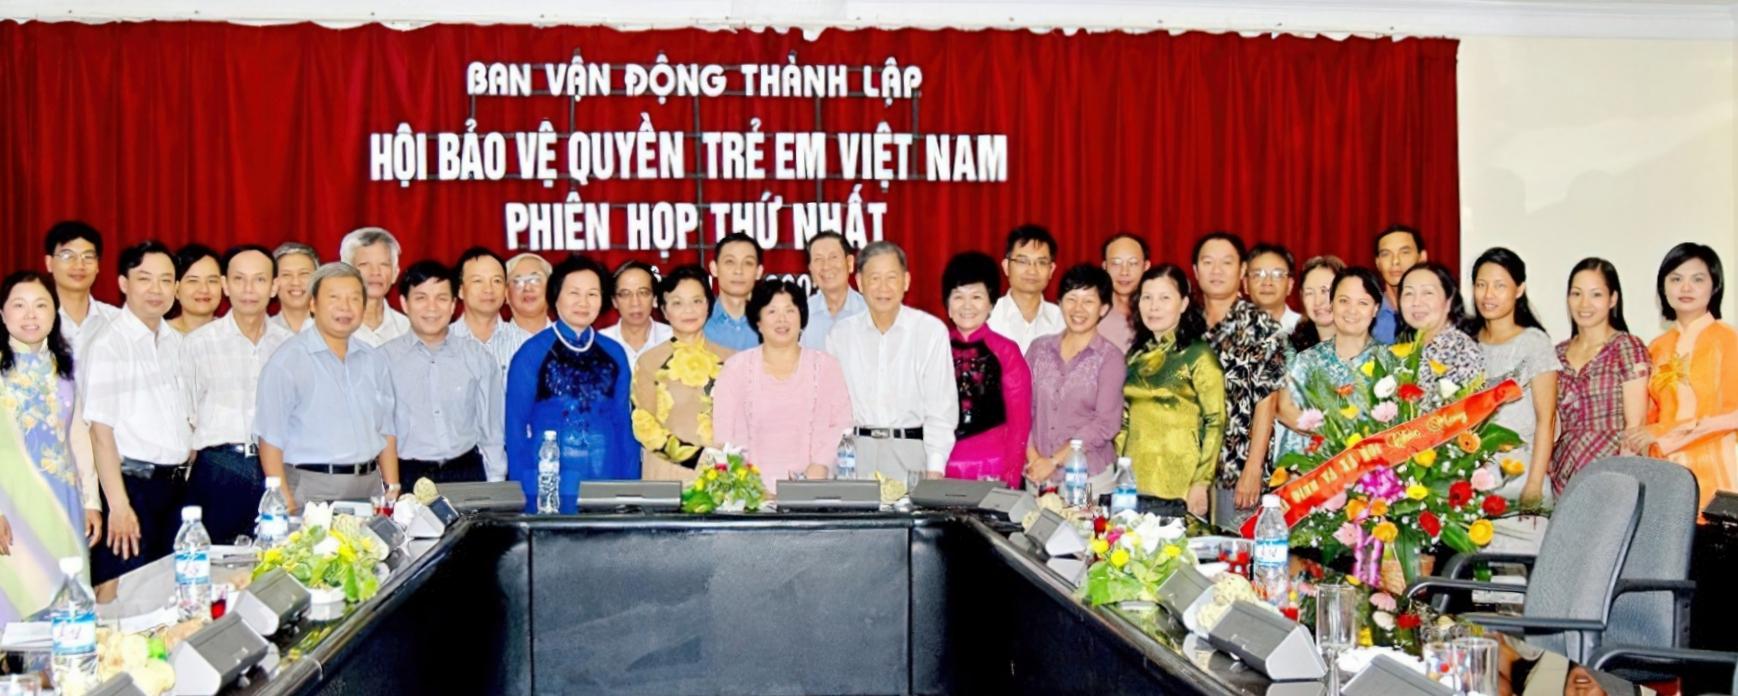 Ngày 11/08/2007, Ban Vận động thành lập Hội BVQTEVN tổ chức phiên họp thứ nhất tại Hà Nội với 32 đại biểu tham dự (Ảnh: HBVQTEVN).